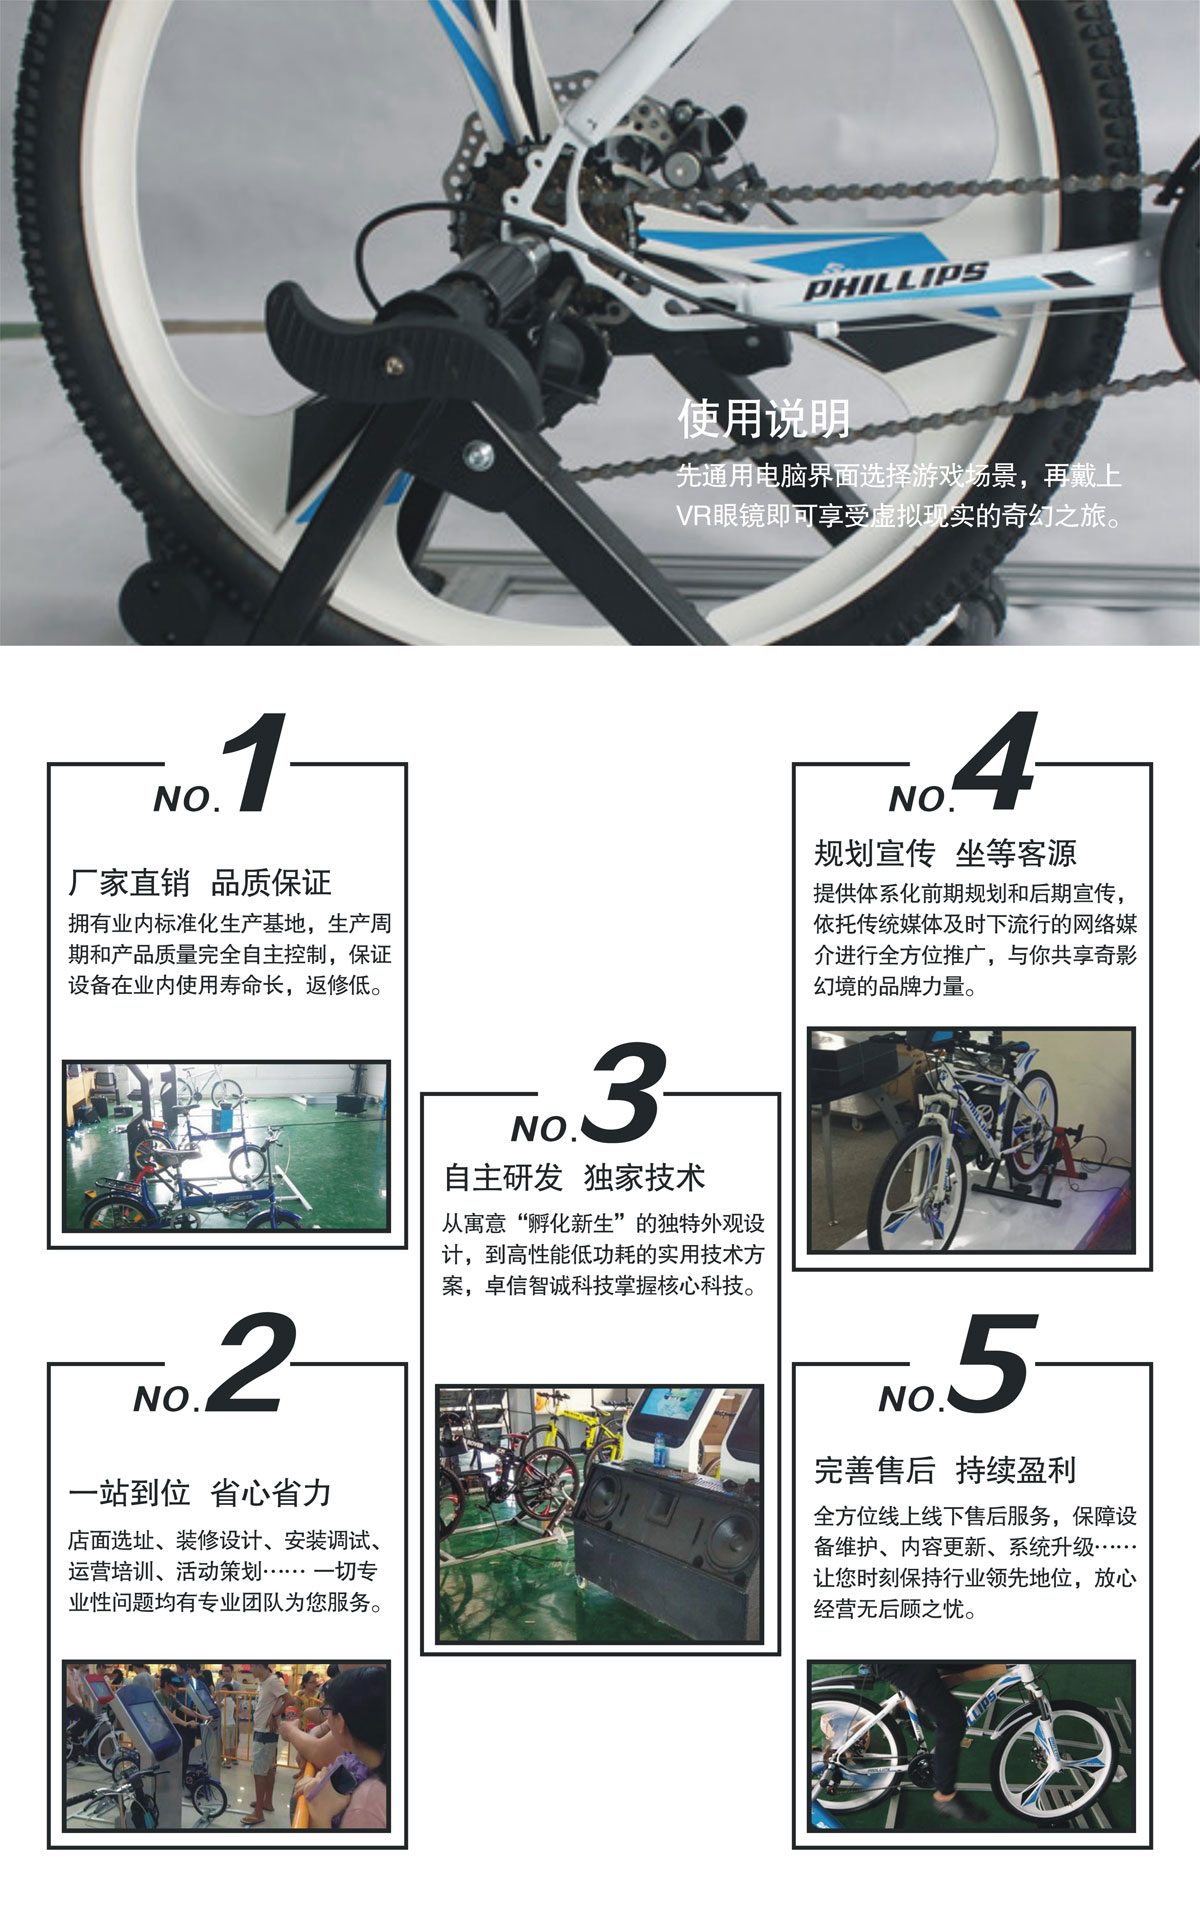 环幕影院VR自行车使用说明.jpg